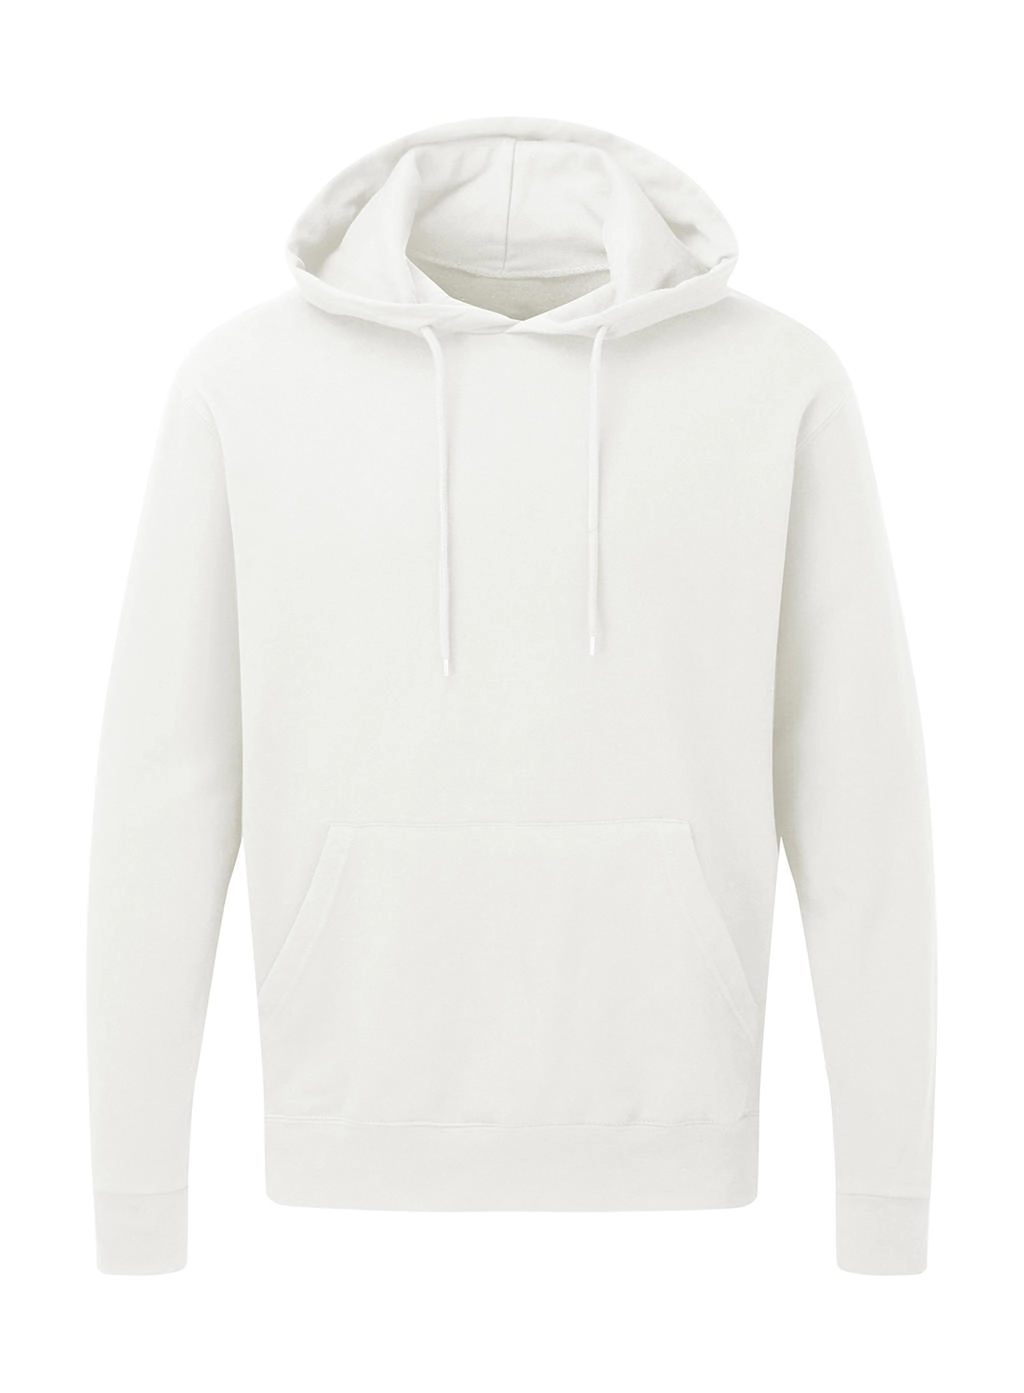 Hooded Sweatshirt Men zum Besticken und Bedrucken in der Farbe Snowwhite mit Ihren Logo, Schriftzug oder Motiv.